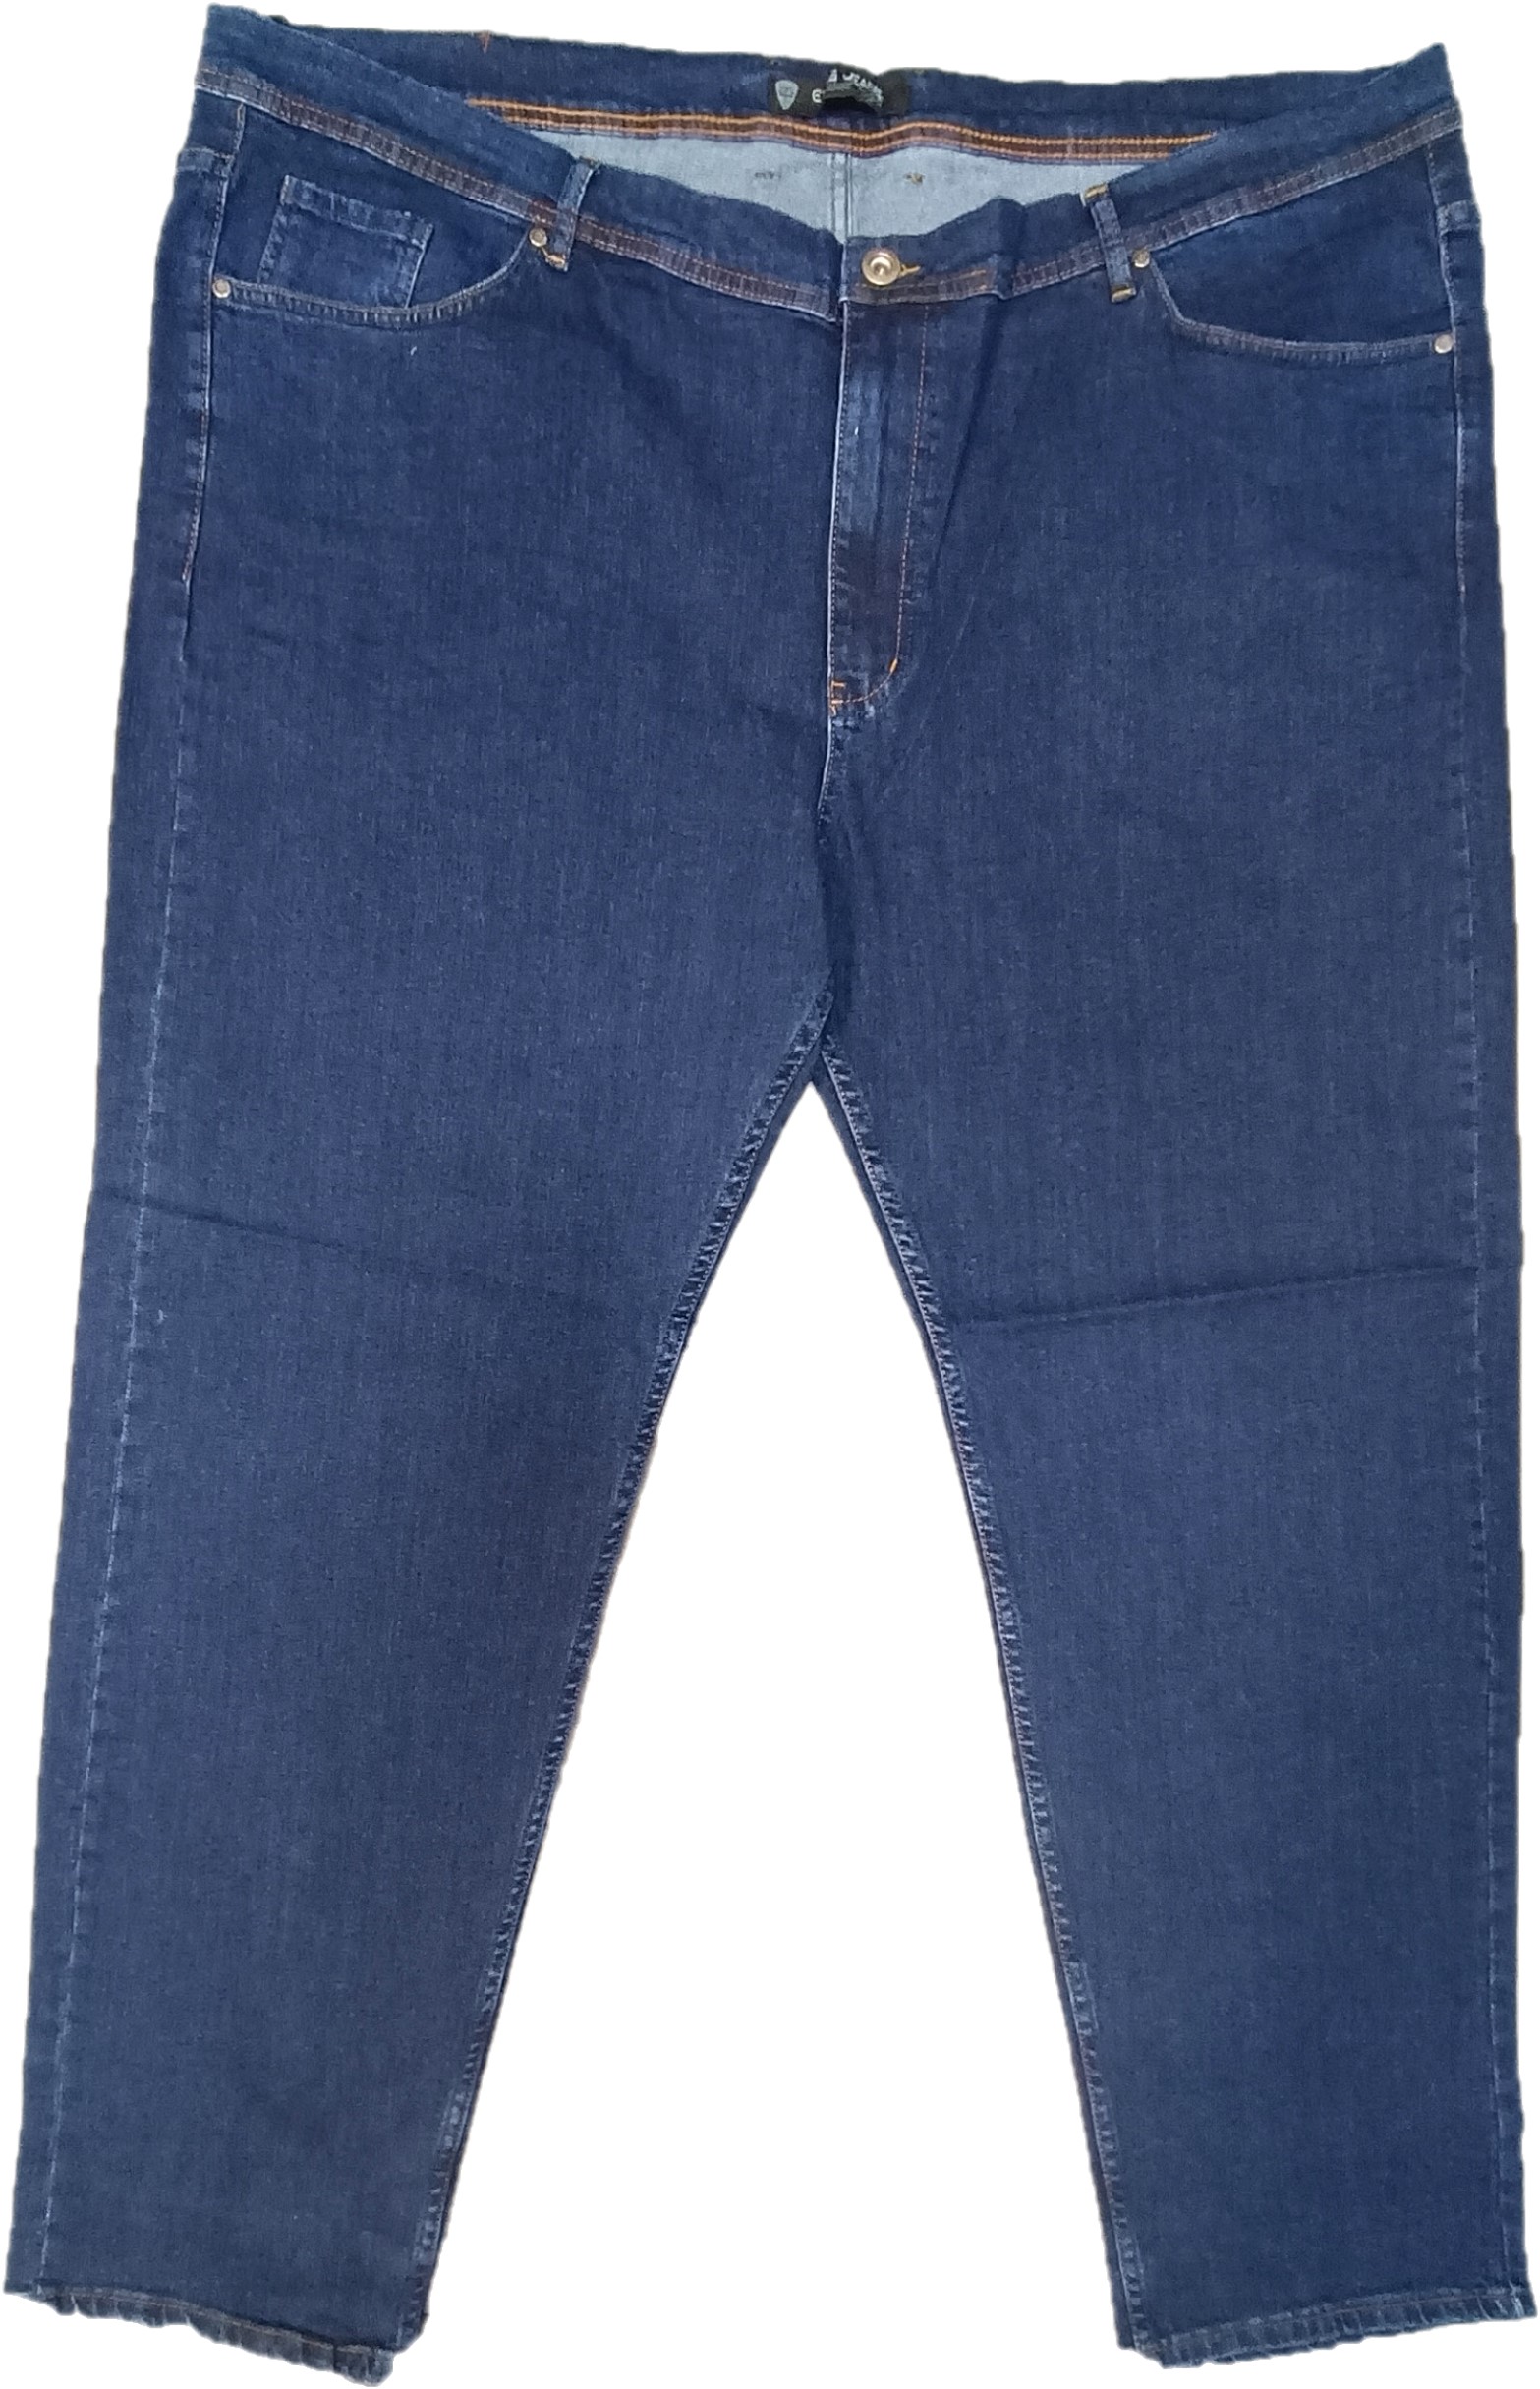 Джинсы мужские Epos Jeans 680055 синие 68 RU